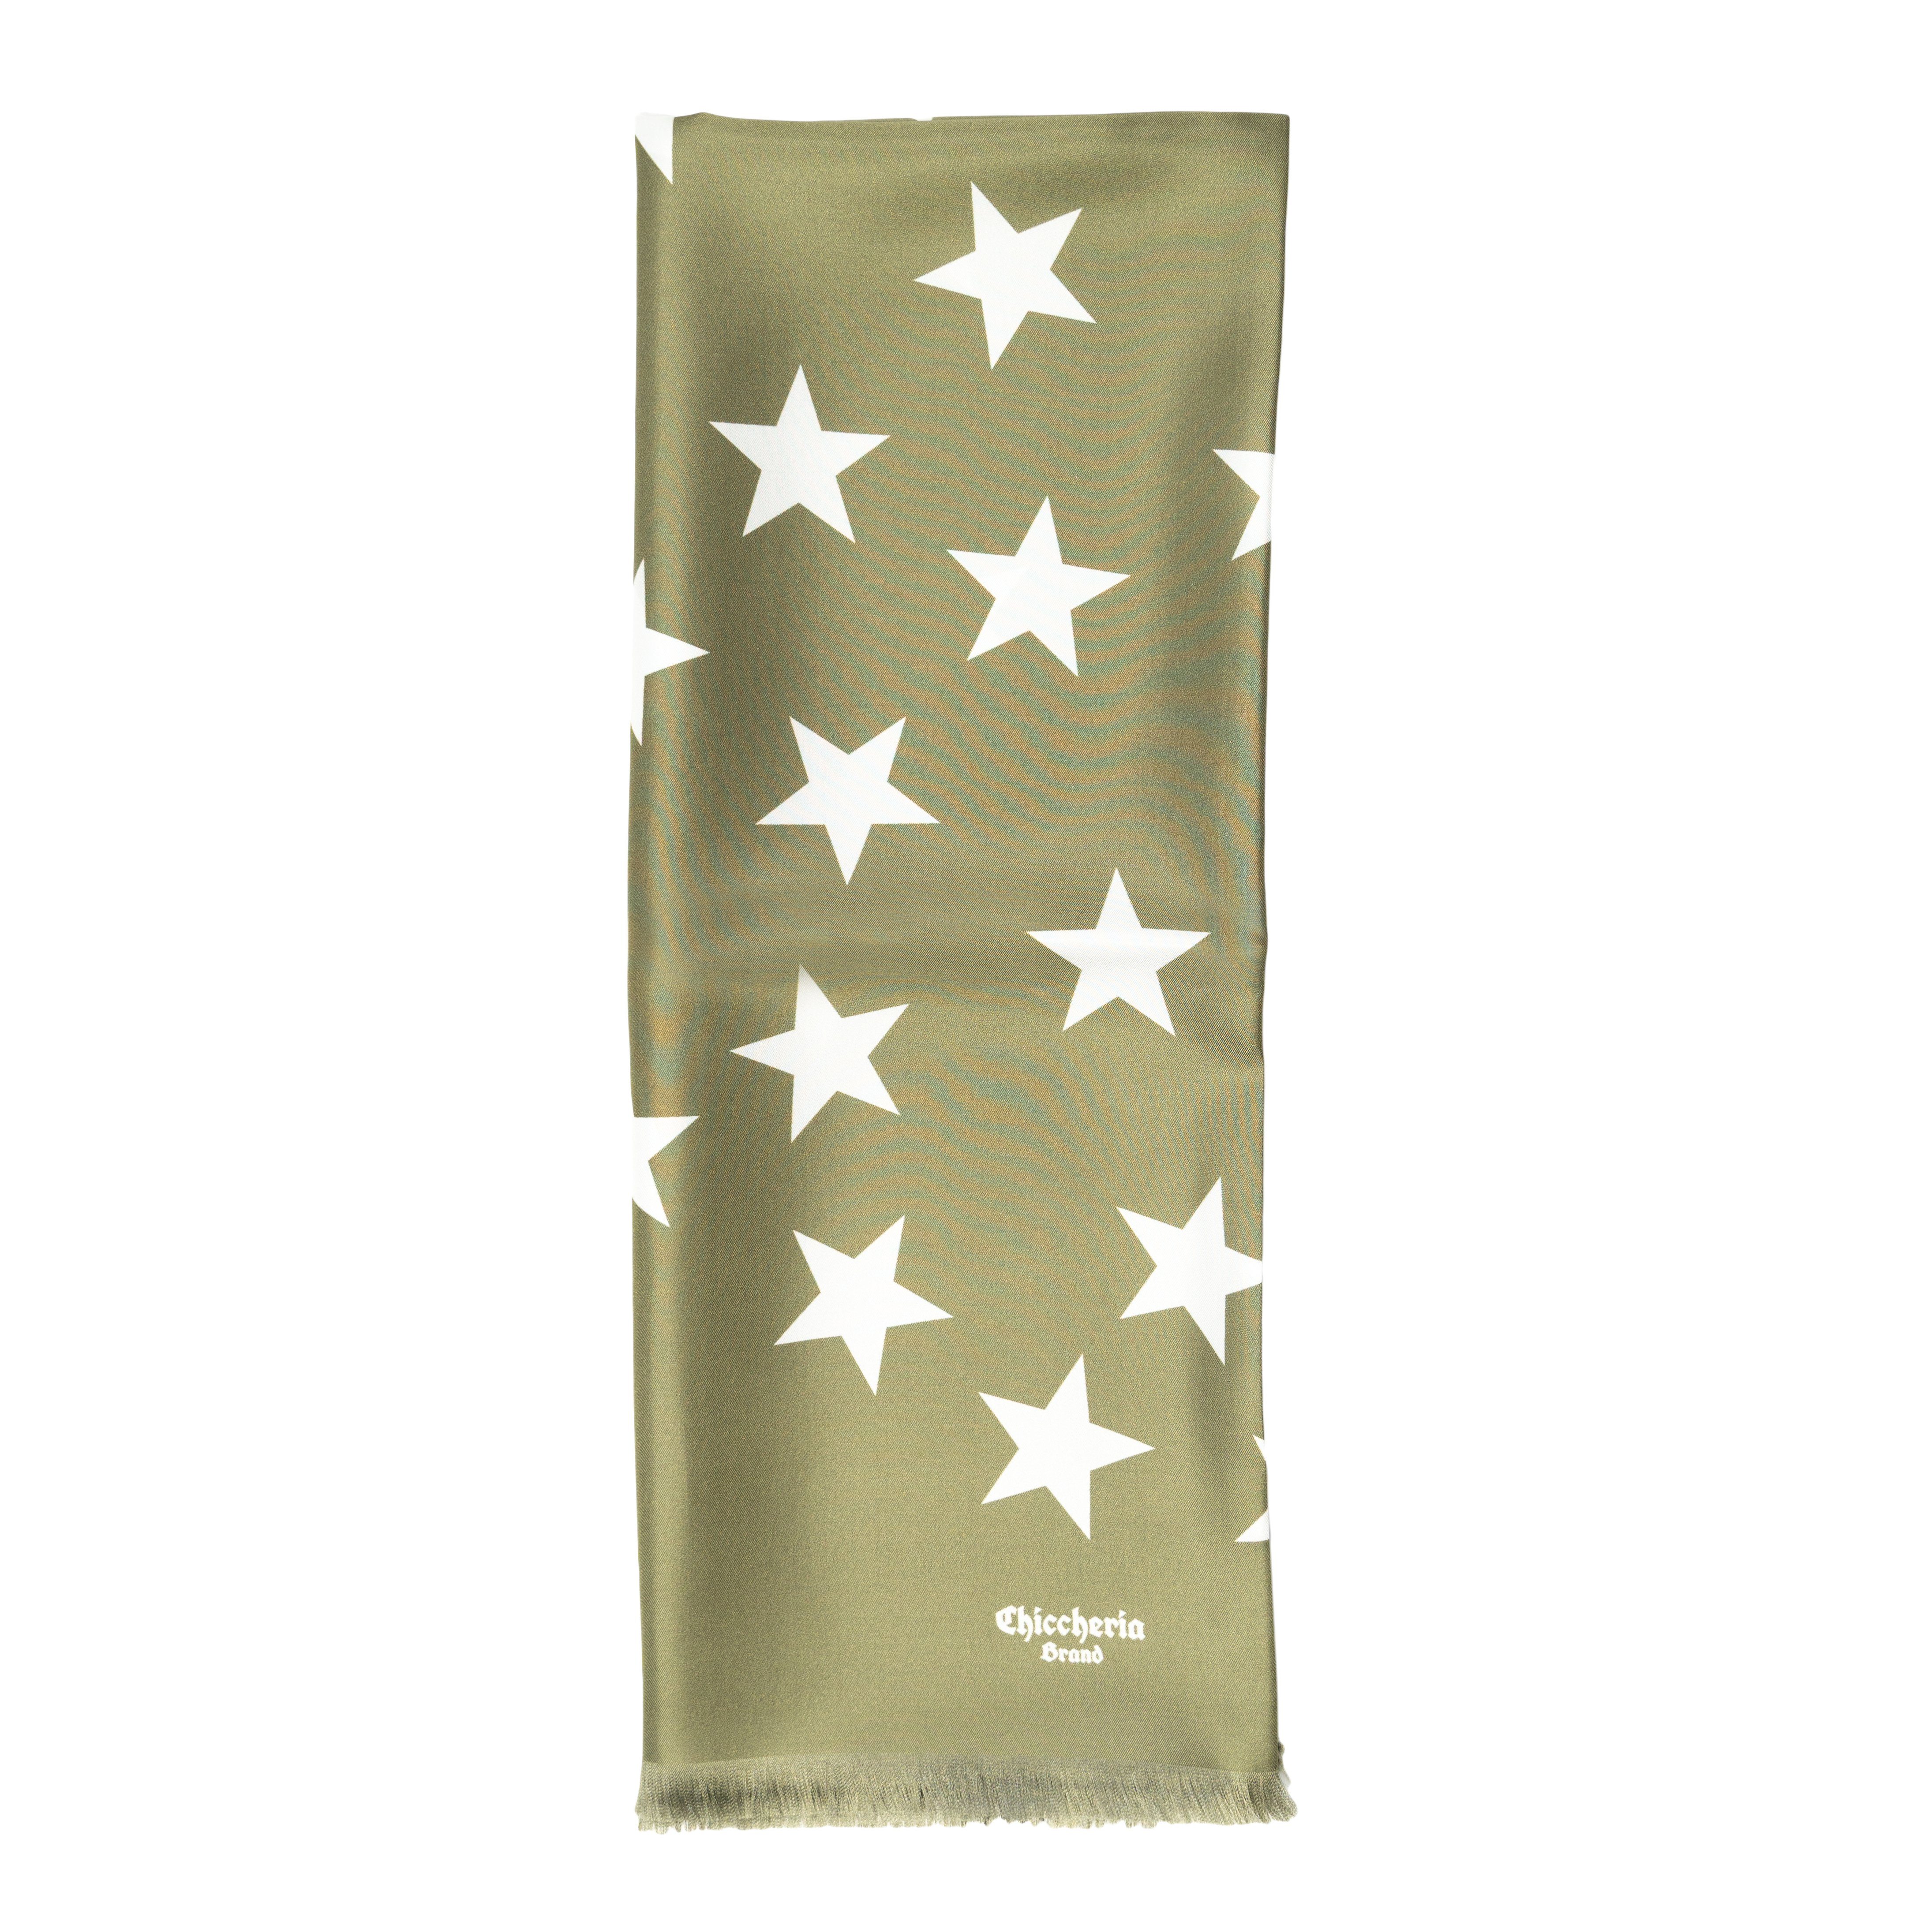 Chiccheria Brand Seidenschal STARS, Made in Italy Oliv-Weiß